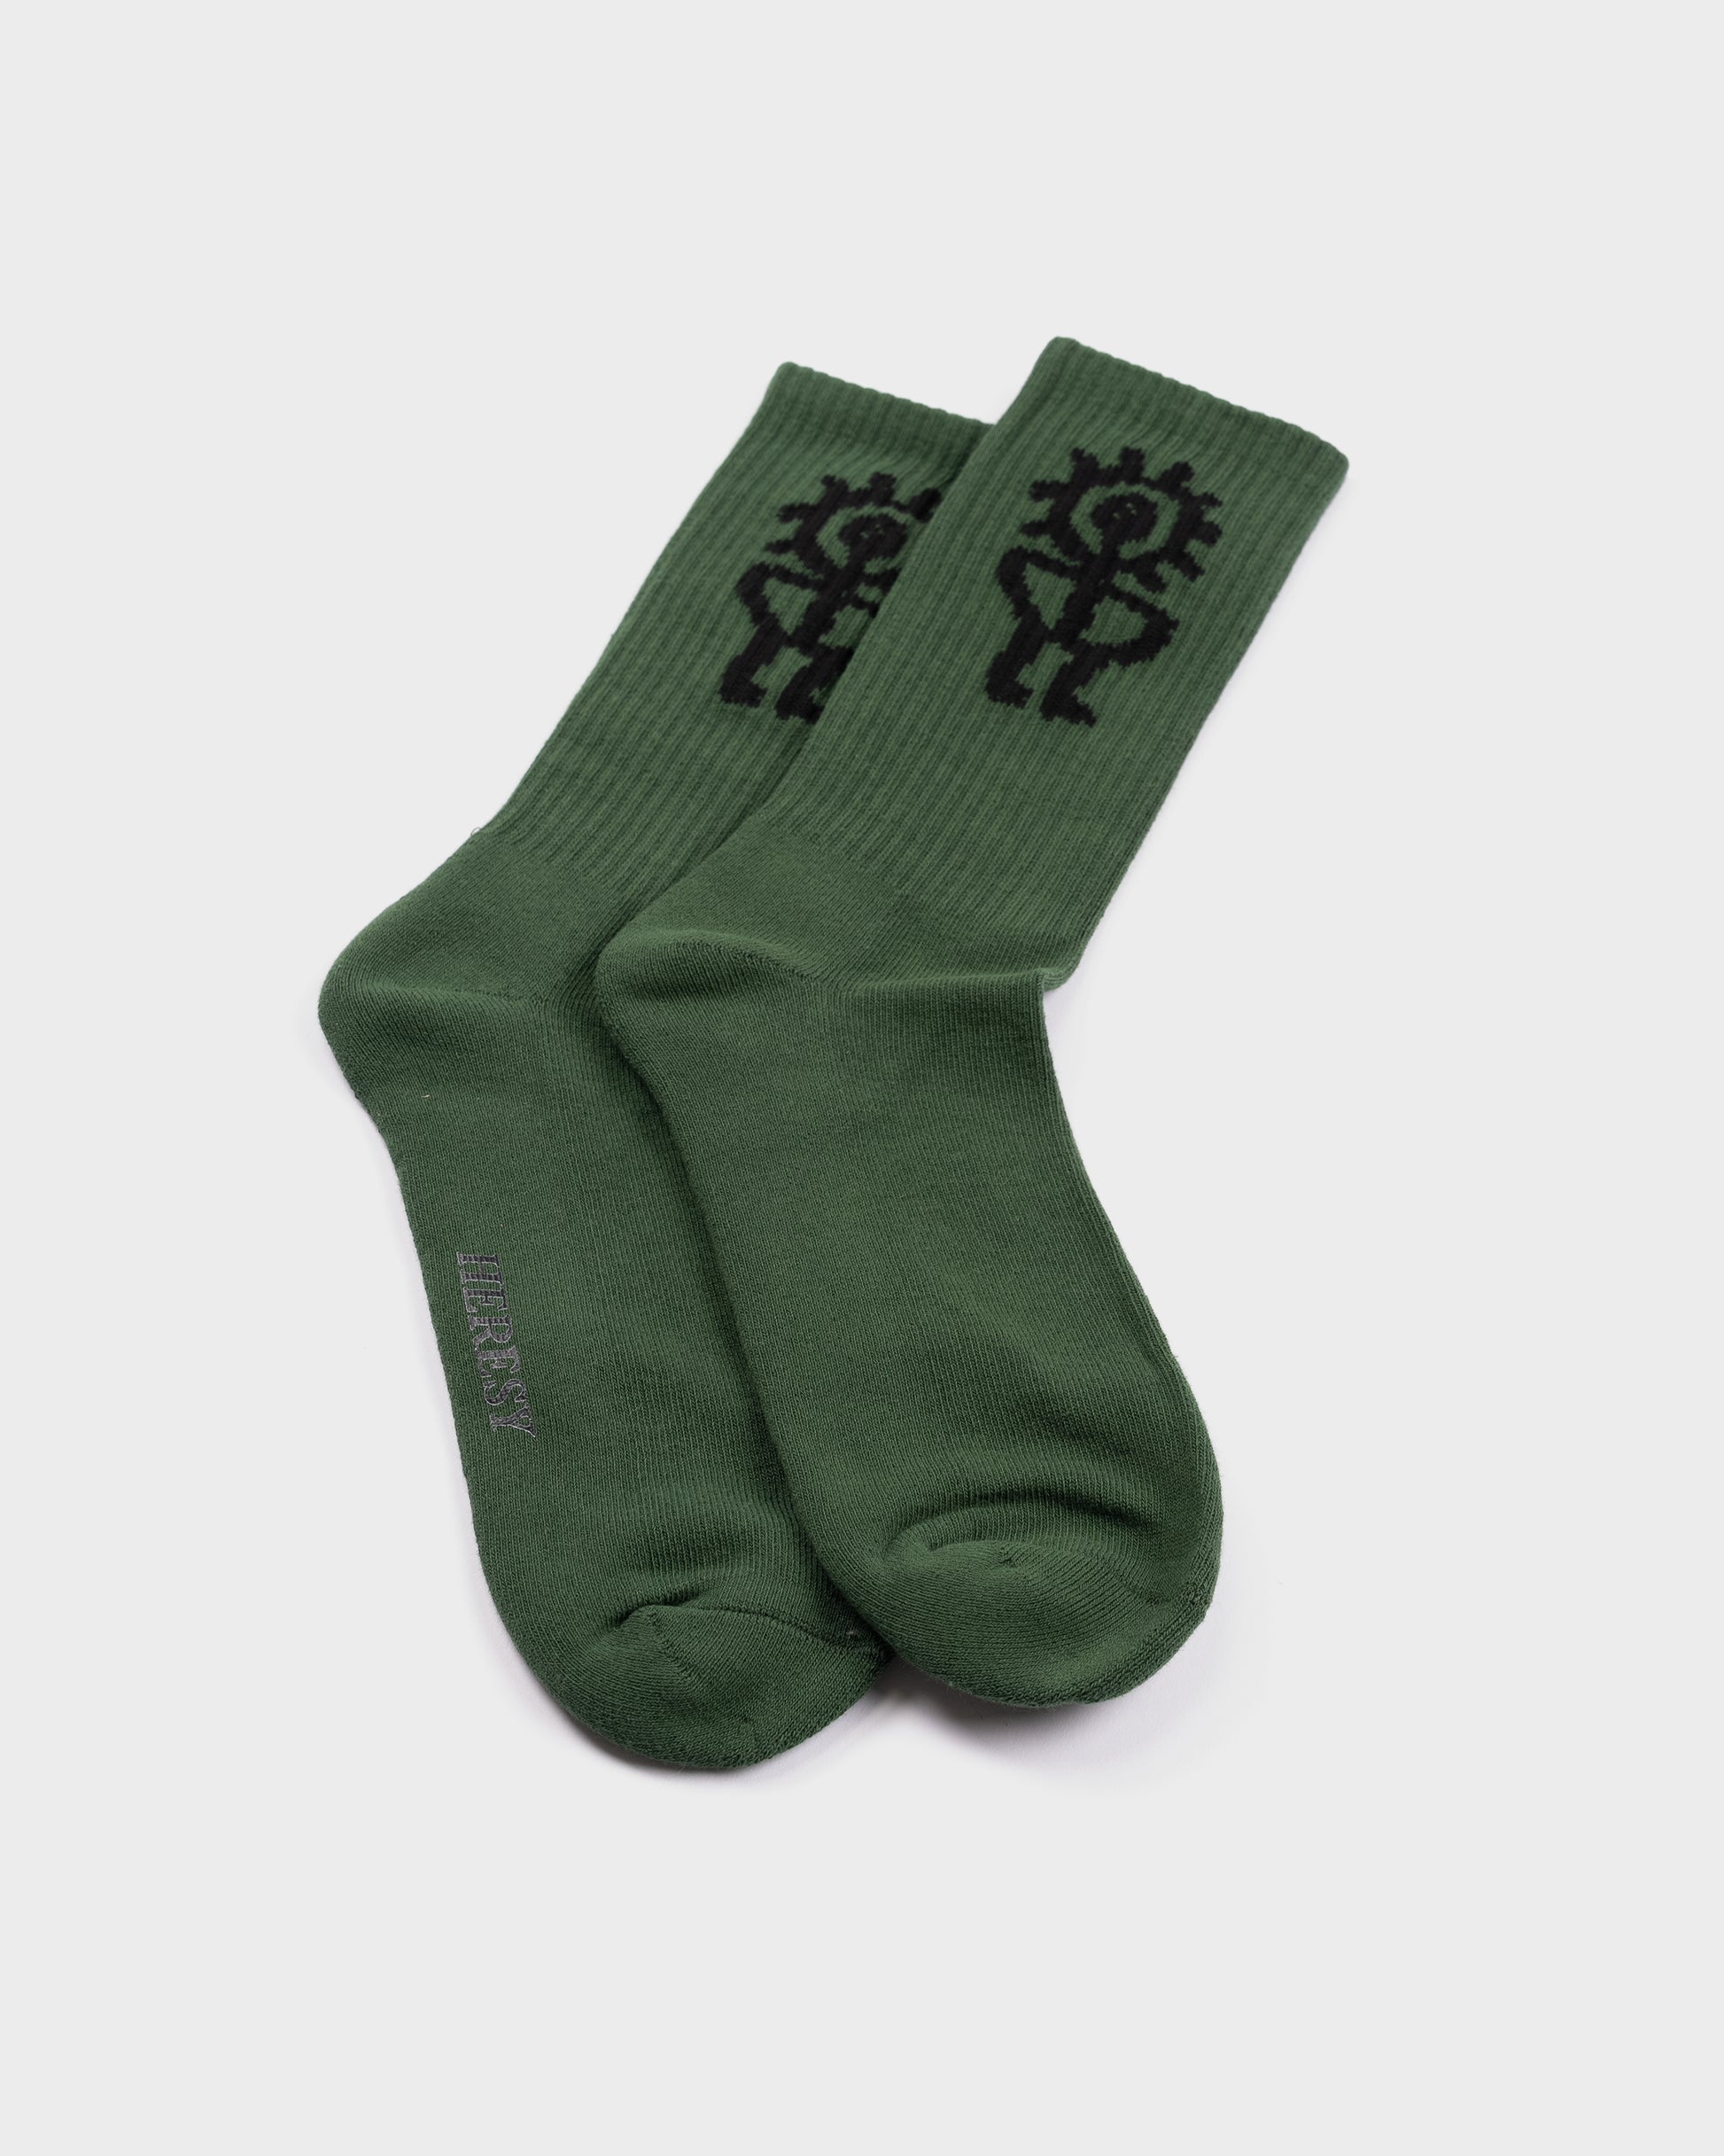 Heresy Sungod Socks - Green